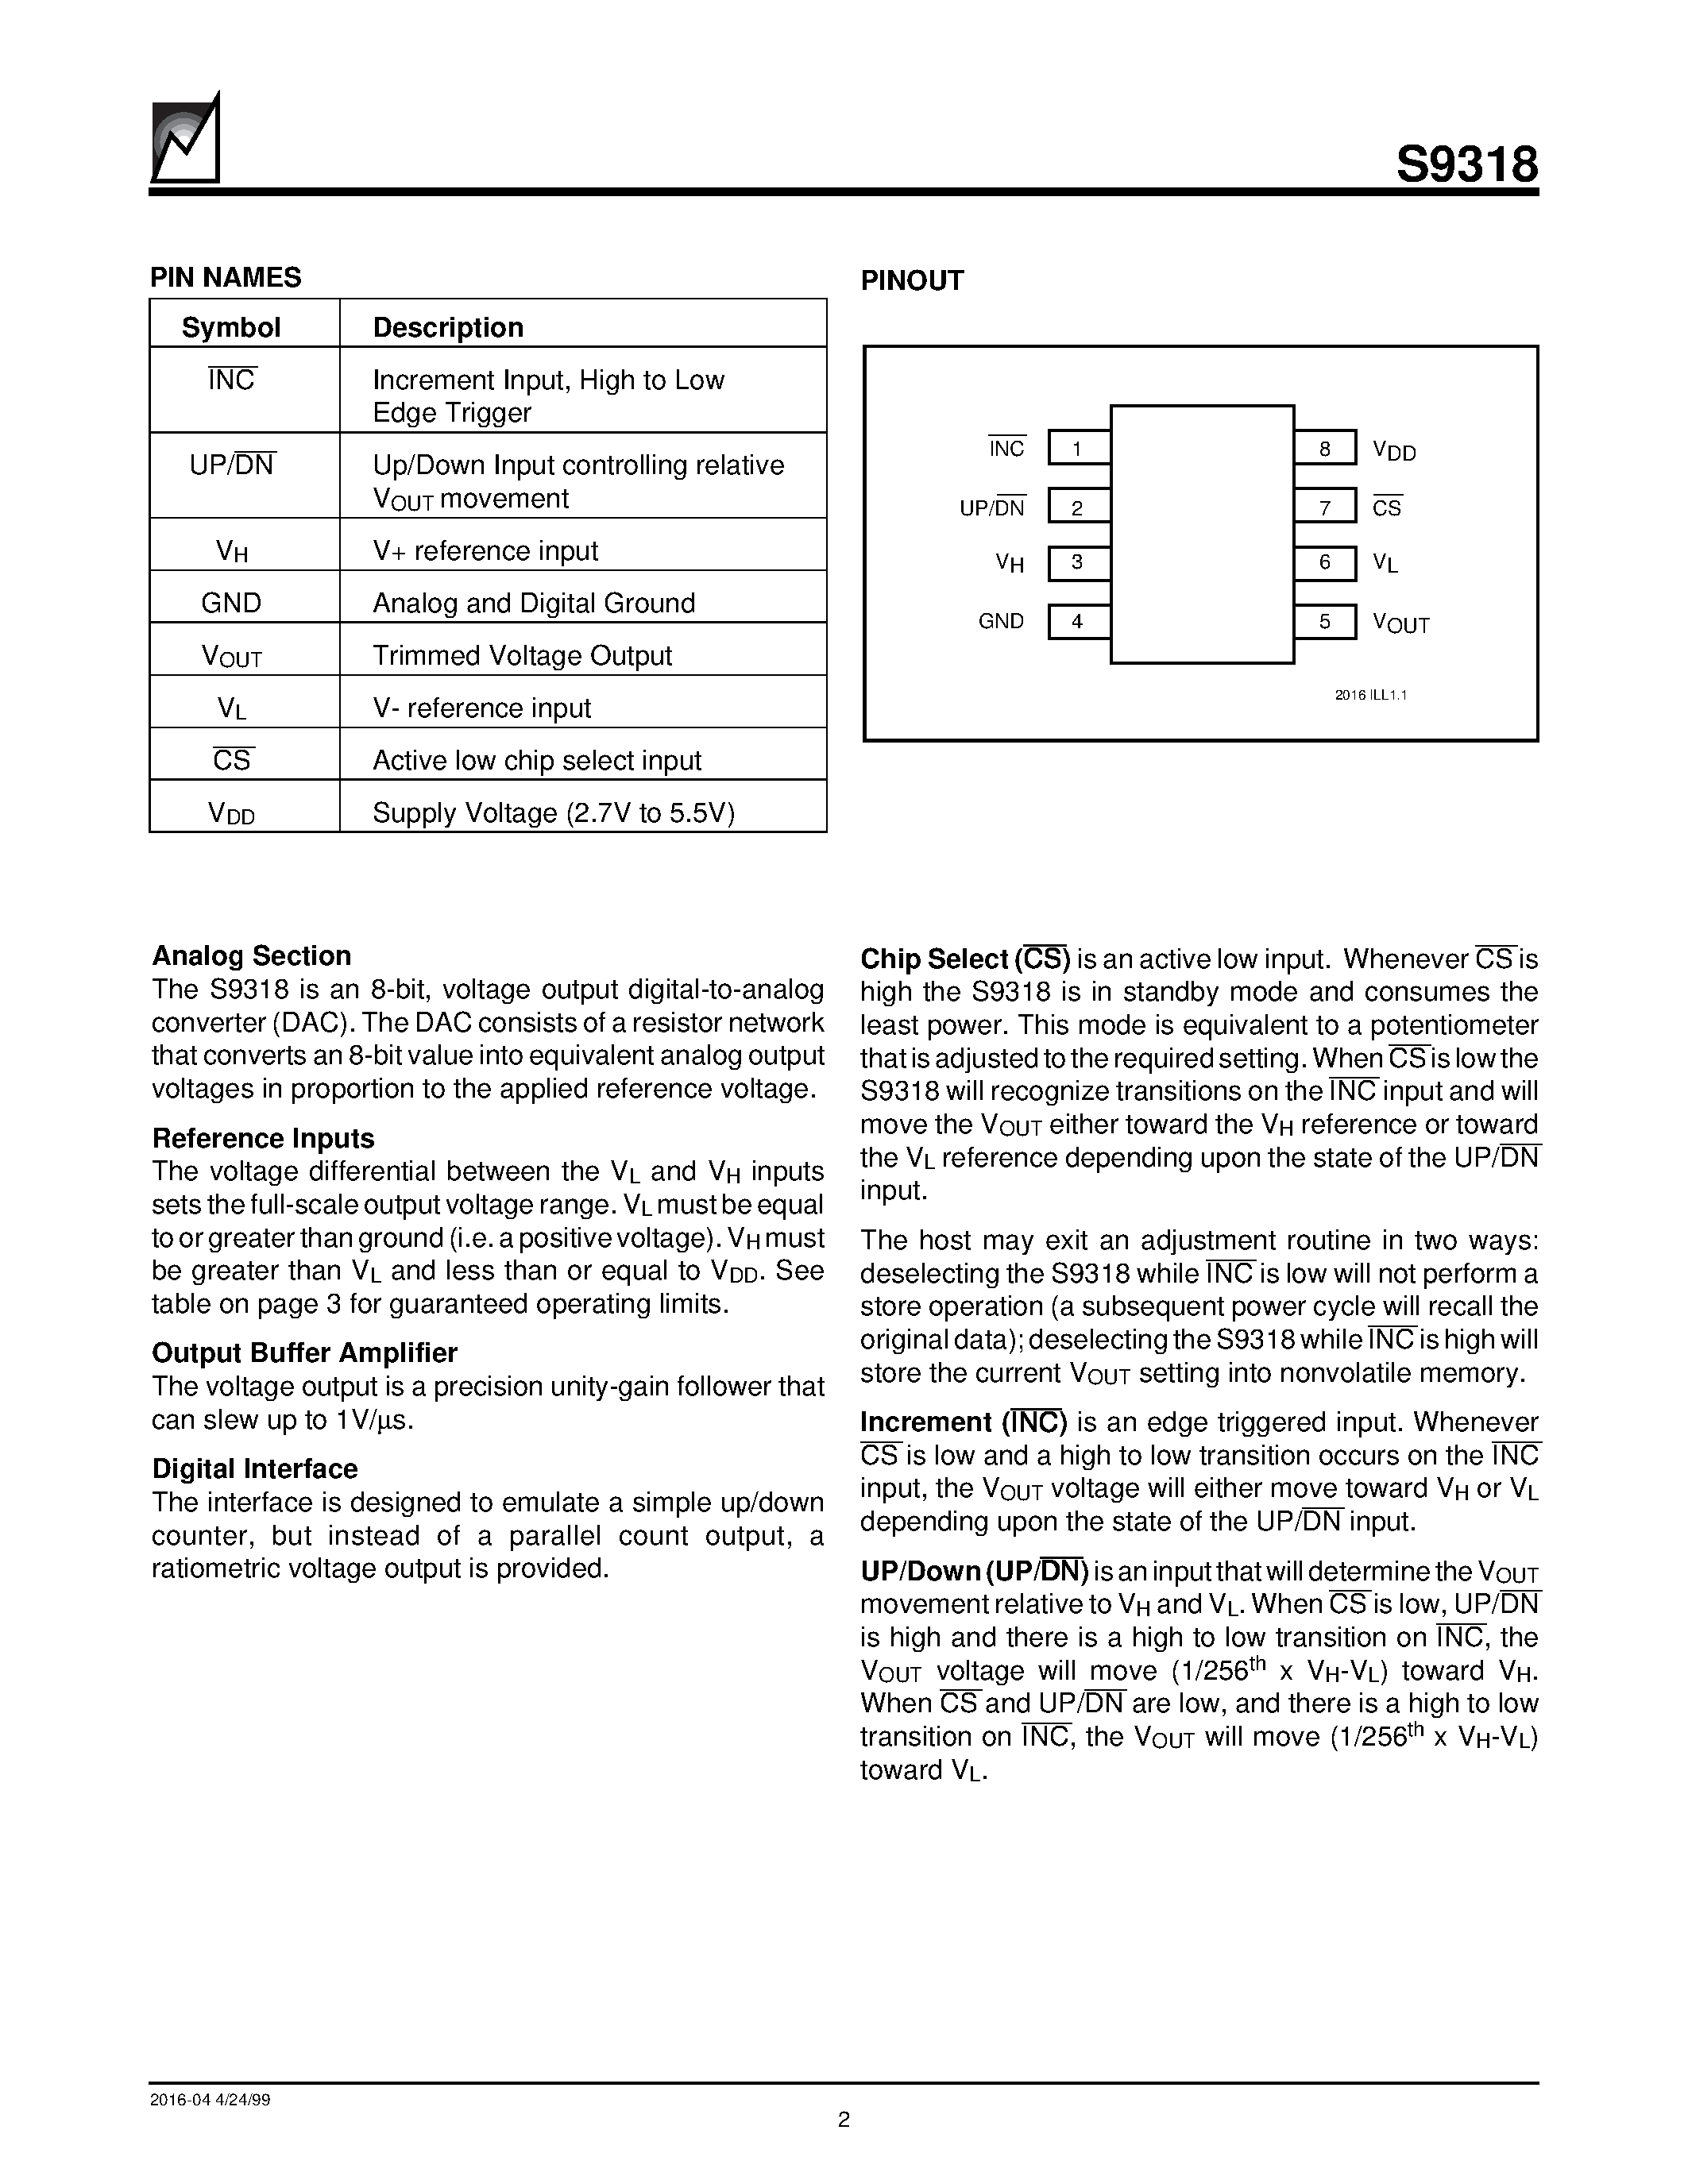 Даташит S9318 - Nonvolatile DACPOT Electronic Potentiometer With Up/Down Counter Interface страница 2